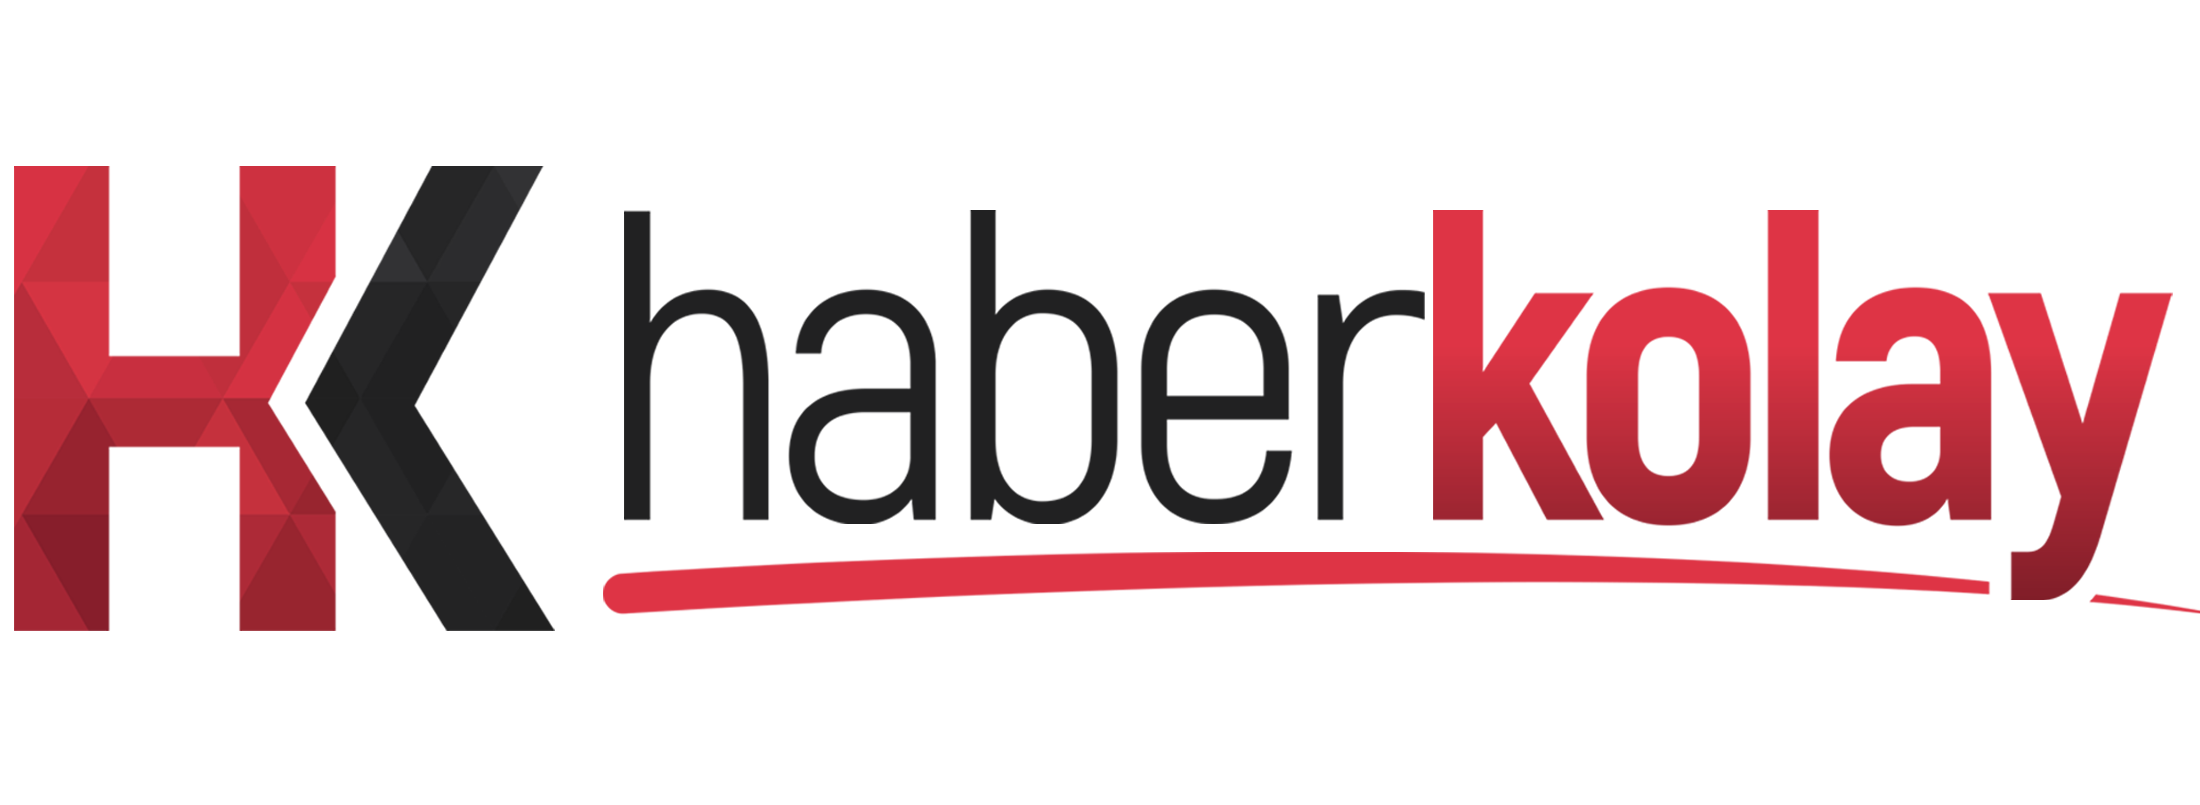 Firma Rehberi - HaberKolay.Net | Haberler, Son Dakika Haberleri 